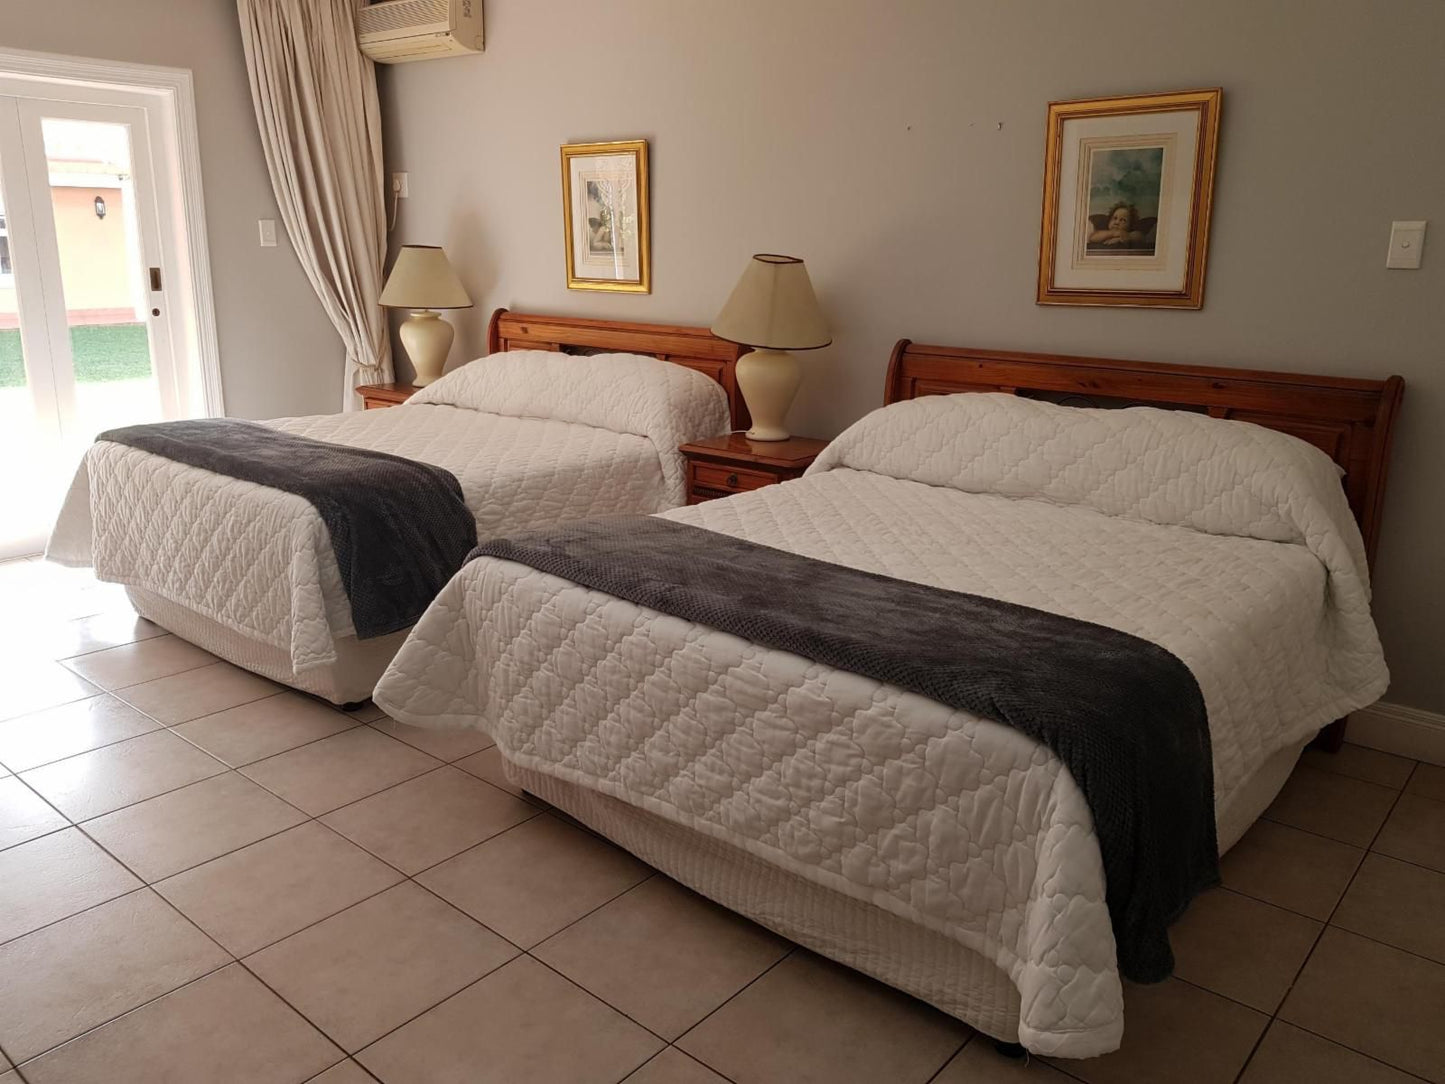 Sica S Guest House Westridge Durban Kwazulu Natal South Africa Bedroom